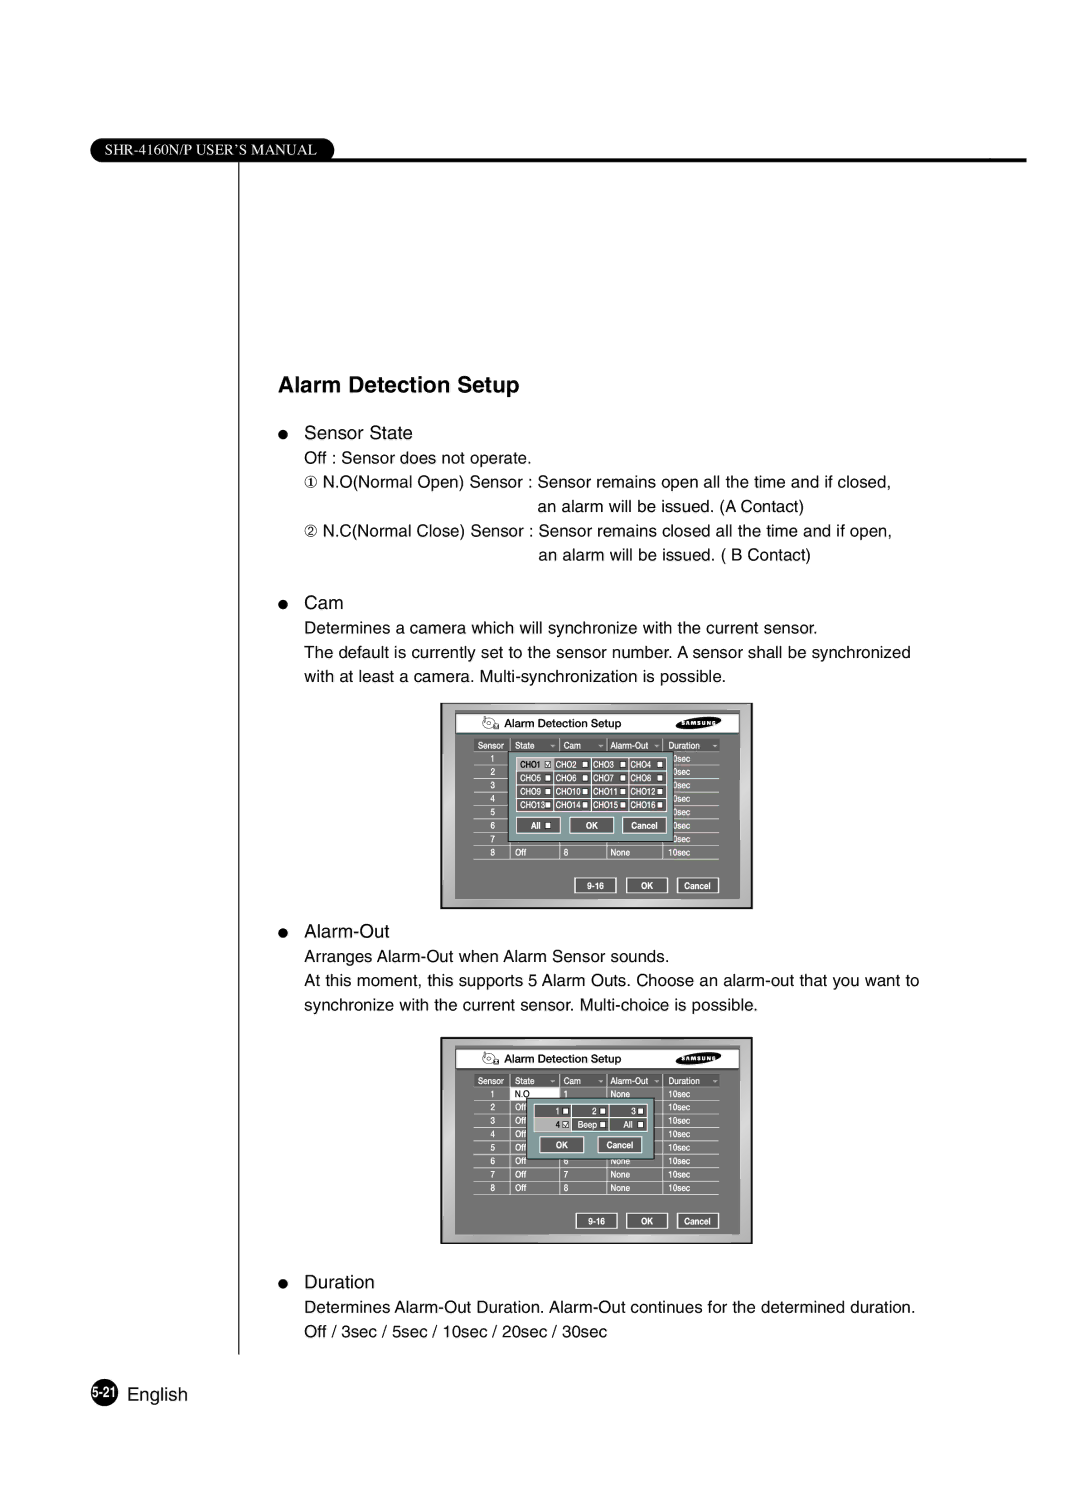 Samsung SHR-4160P manual Alarm Detection Setup 